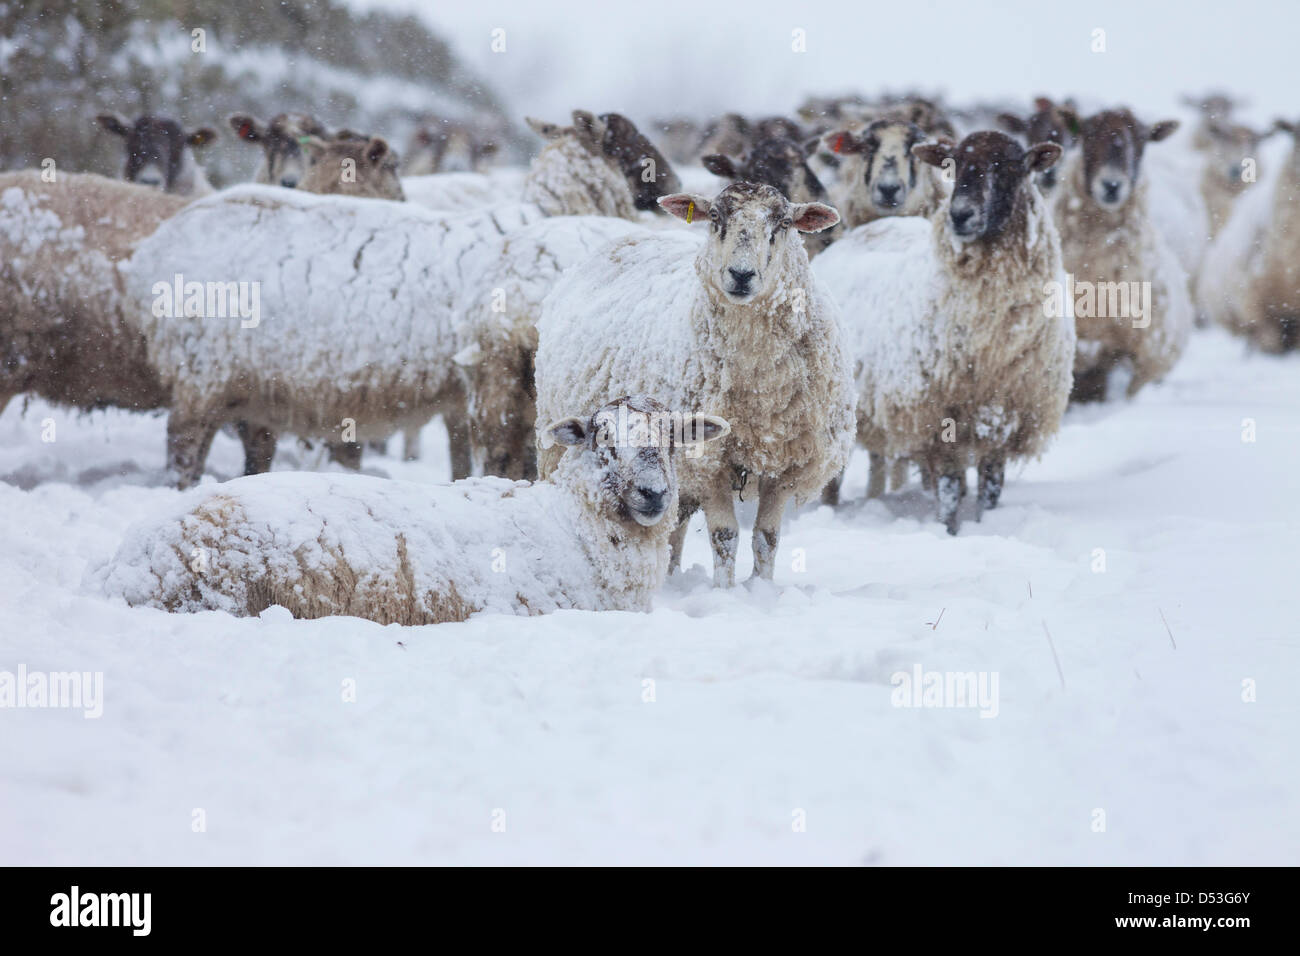 Comté de Durham Royaume-Uni. 23 mars 2013 moutons faisant face à la chute de neige et aux blizzards qui ont frappé la région pendant la nuit. Crédit : David Forster / Alamy Live News Banque D'Images